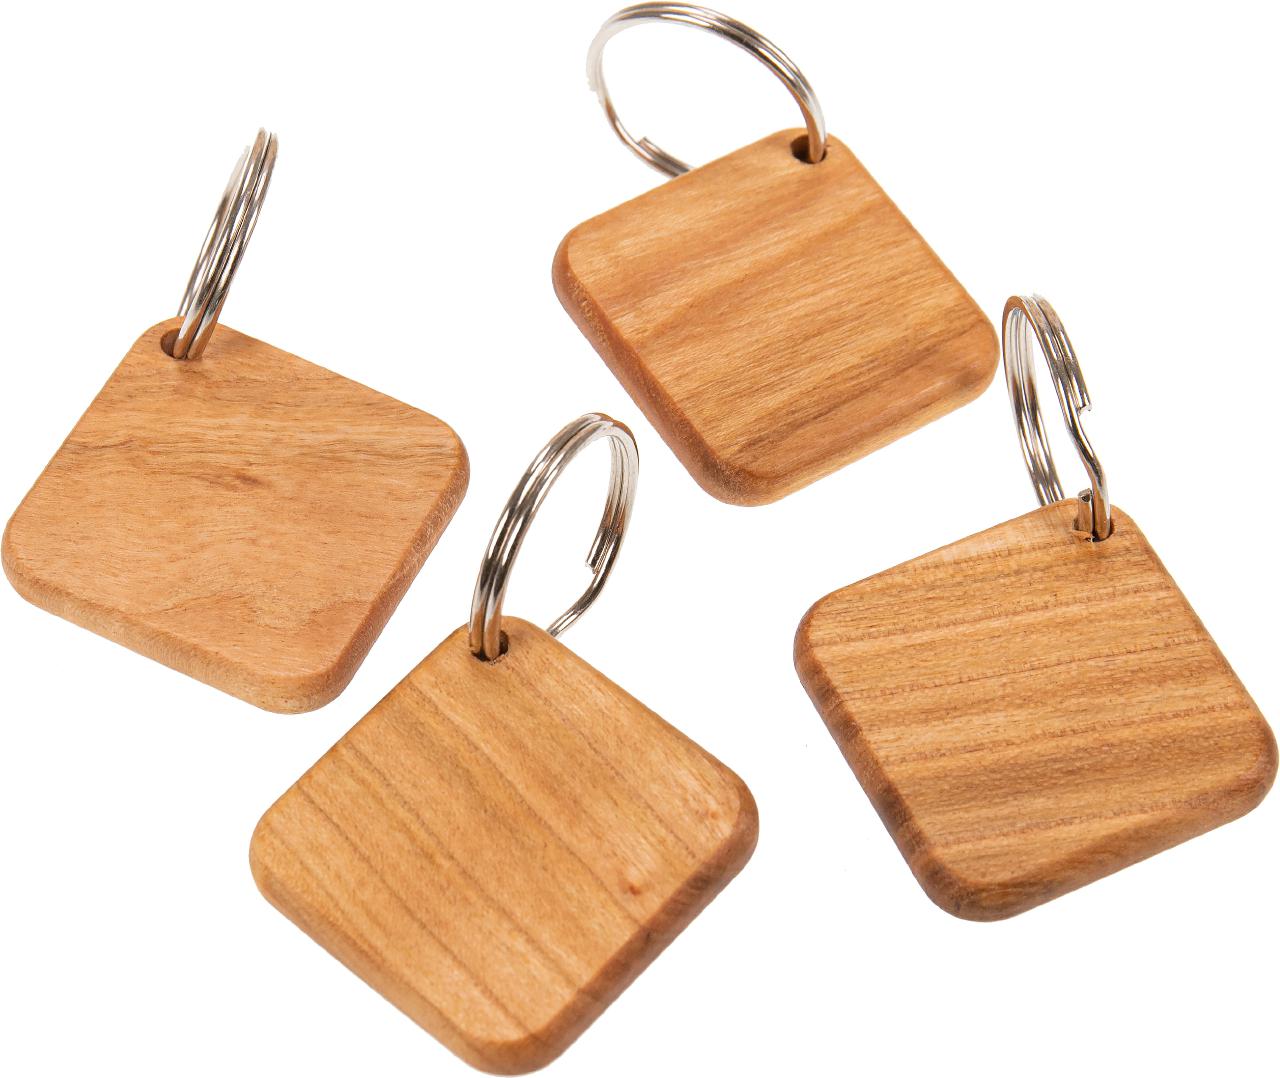 Holz-Schlüsselanhänger aus geölter Eiche rund mit hellbraunem Lederband